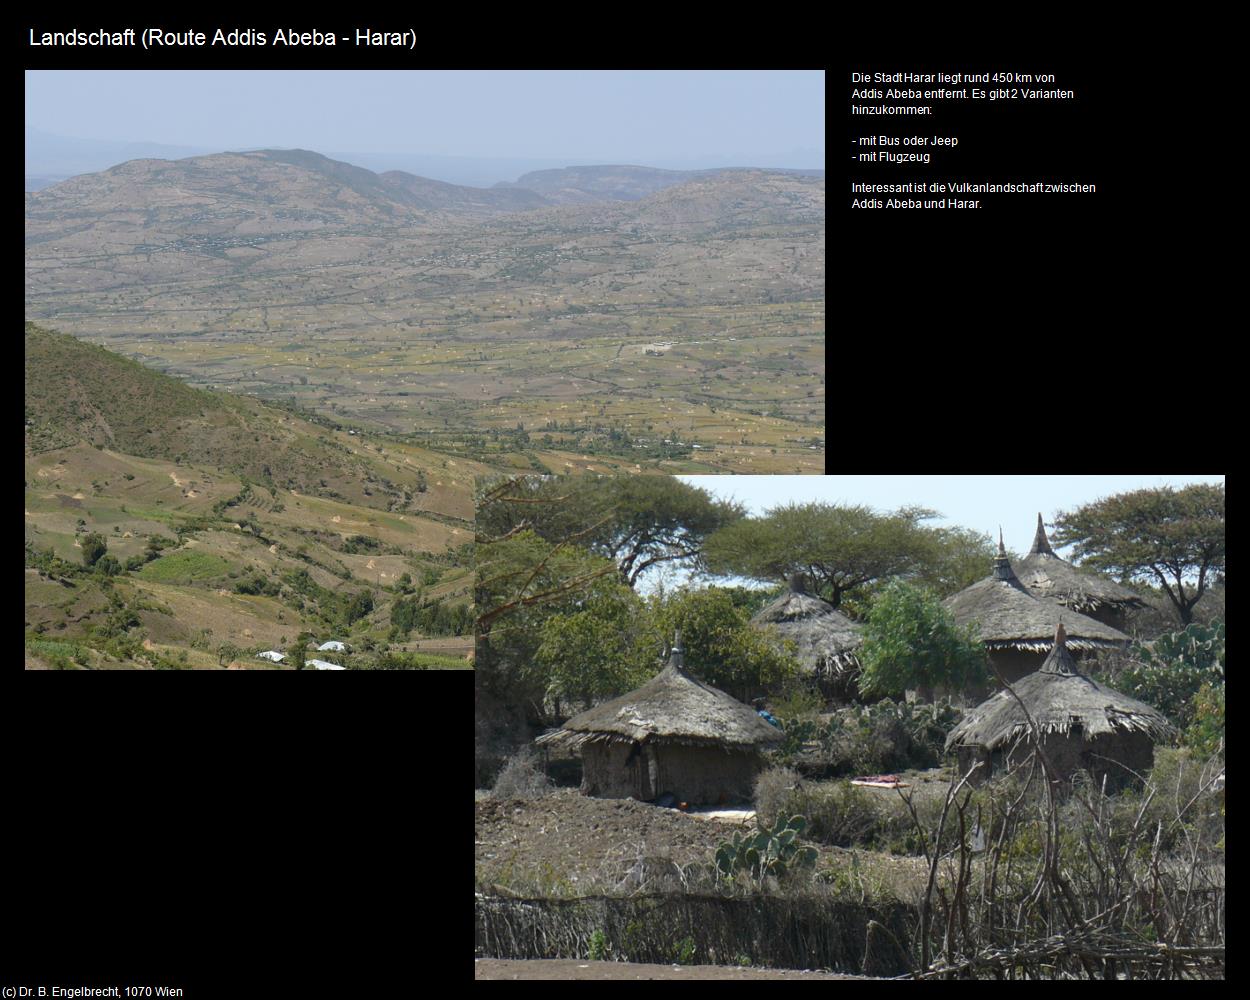 Landschaft (Route Addis Abeba-Harar) in Äthiopien